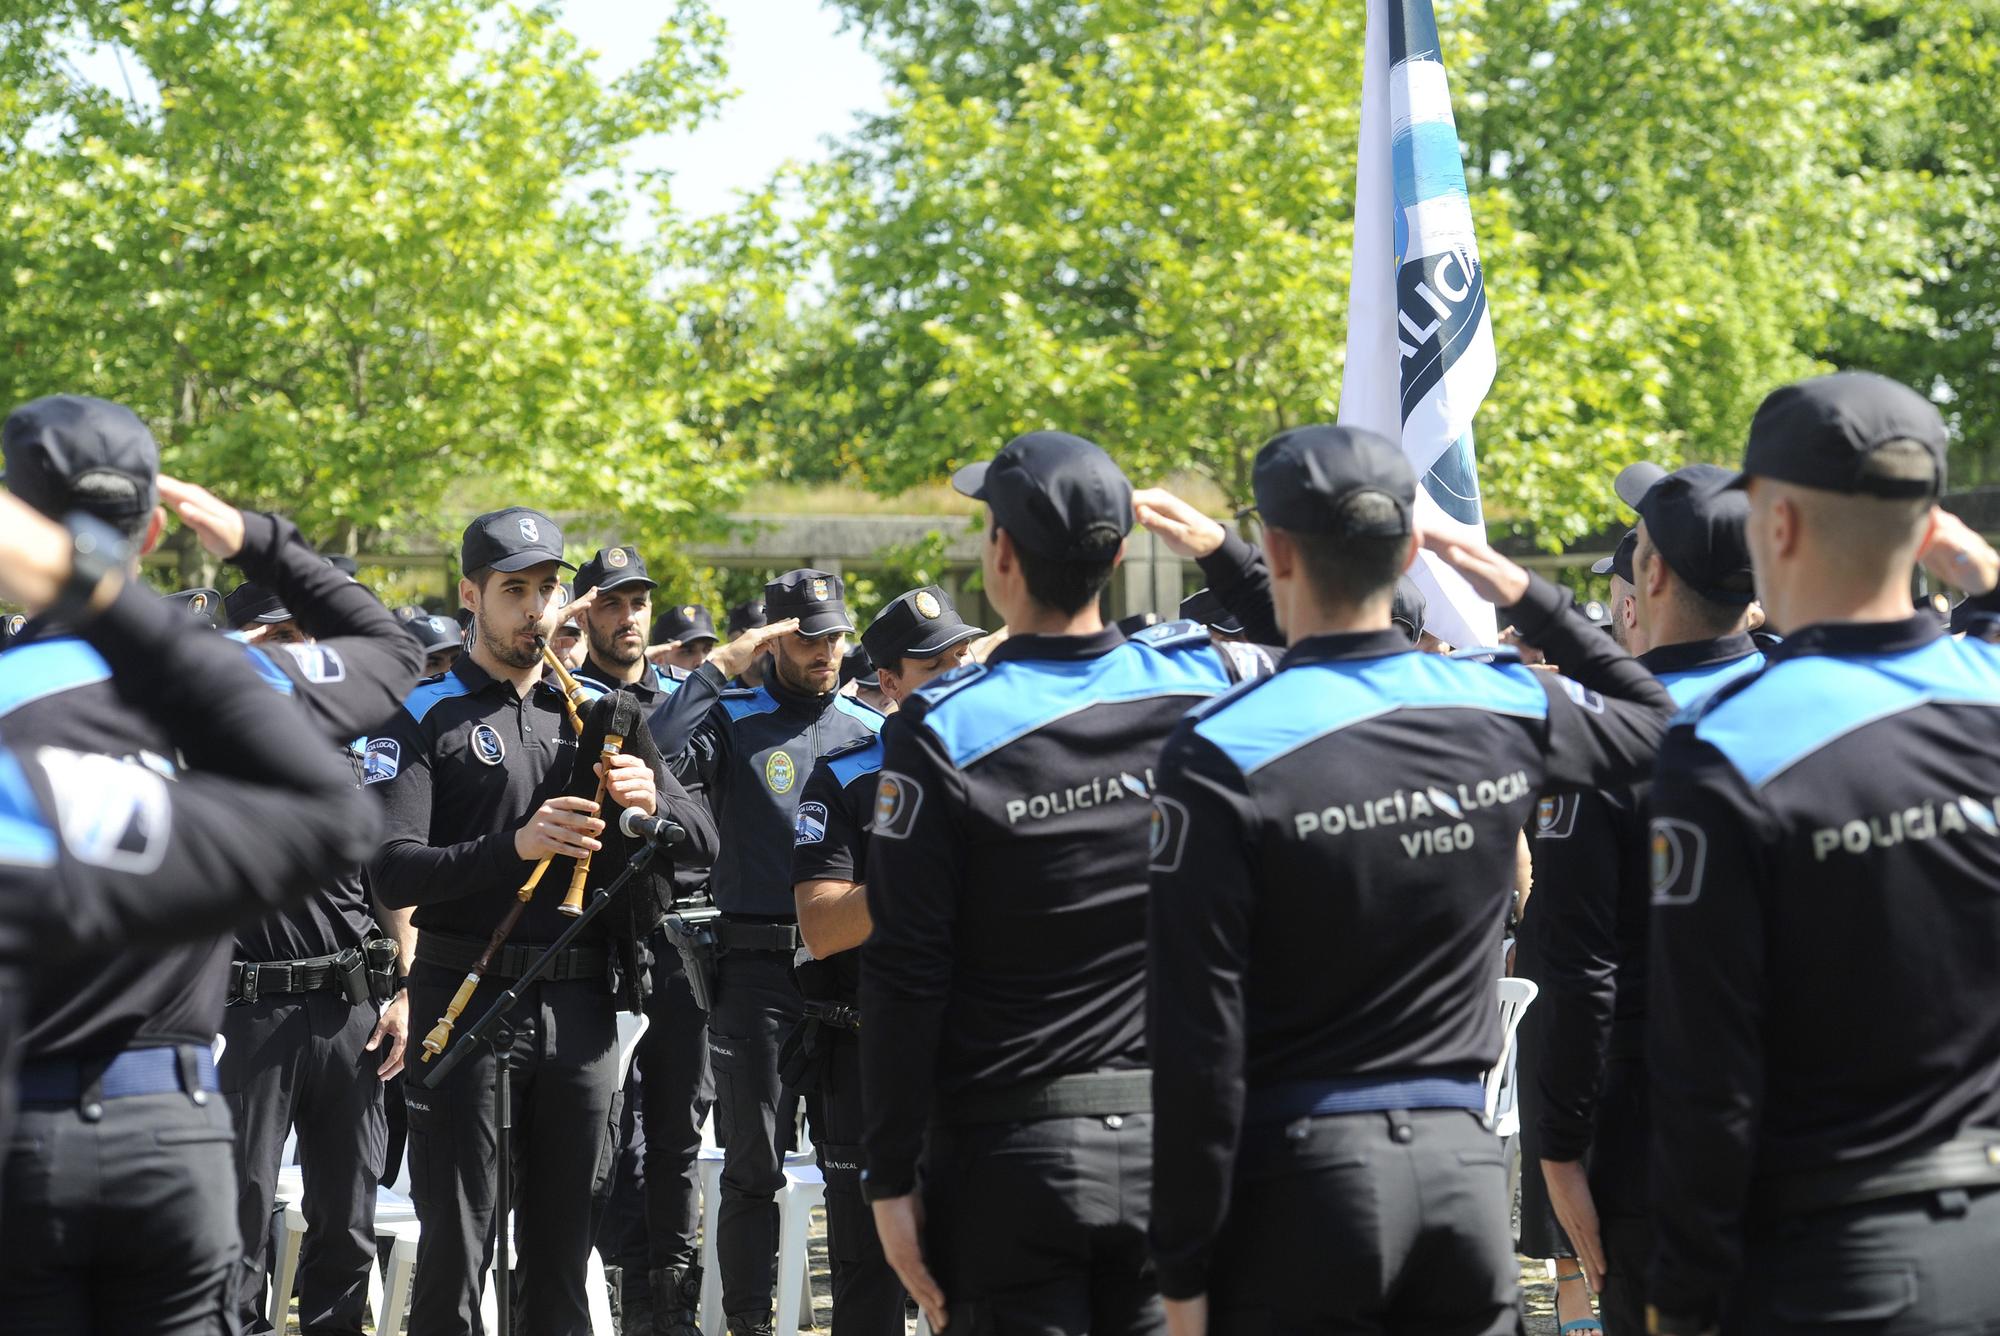 Masiva entrega de distinciones en la academia gallega de Policía Local